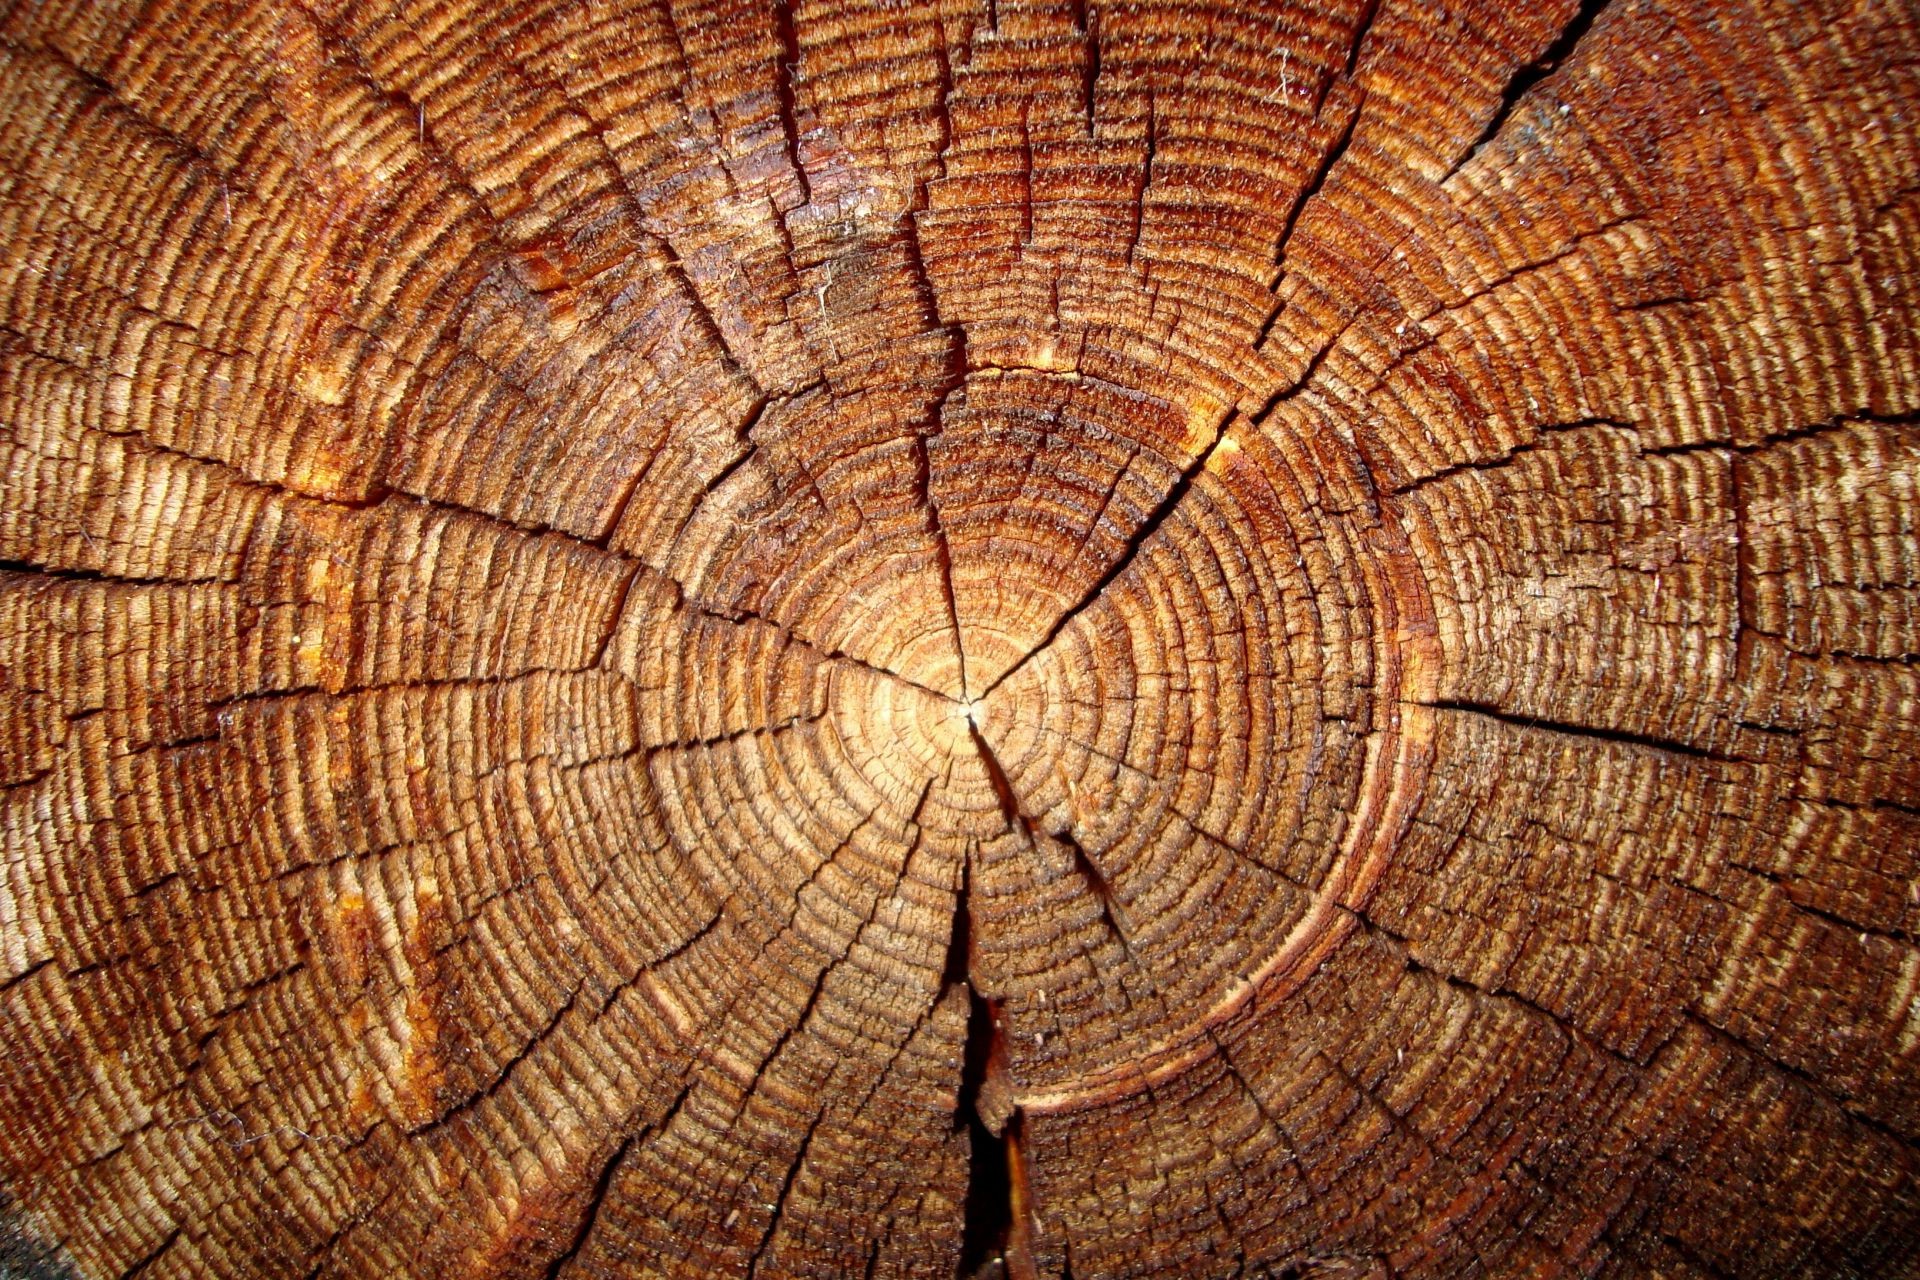 дерево журнал древесины дрова деревянный деревянные пенек шаблон текстура рабочего стола плотницкий кора годовой ткань багажник дуб грубо доска природа